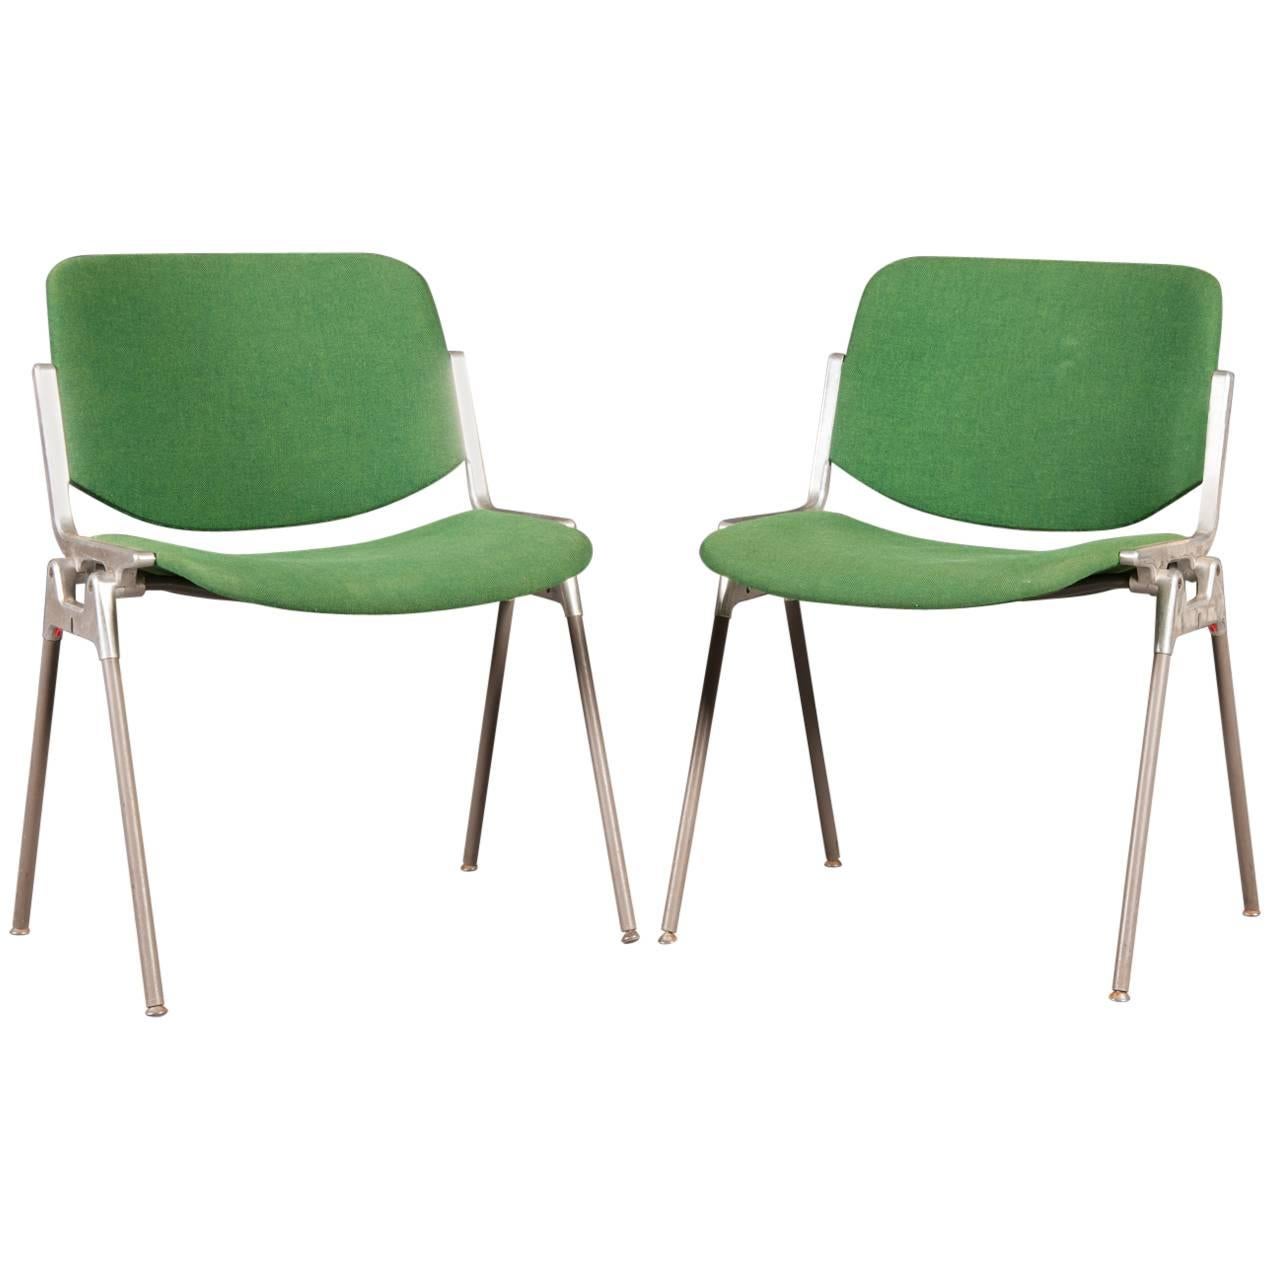 Grüne stapelbare Stühle von Giancarlo Piretti für Castelli